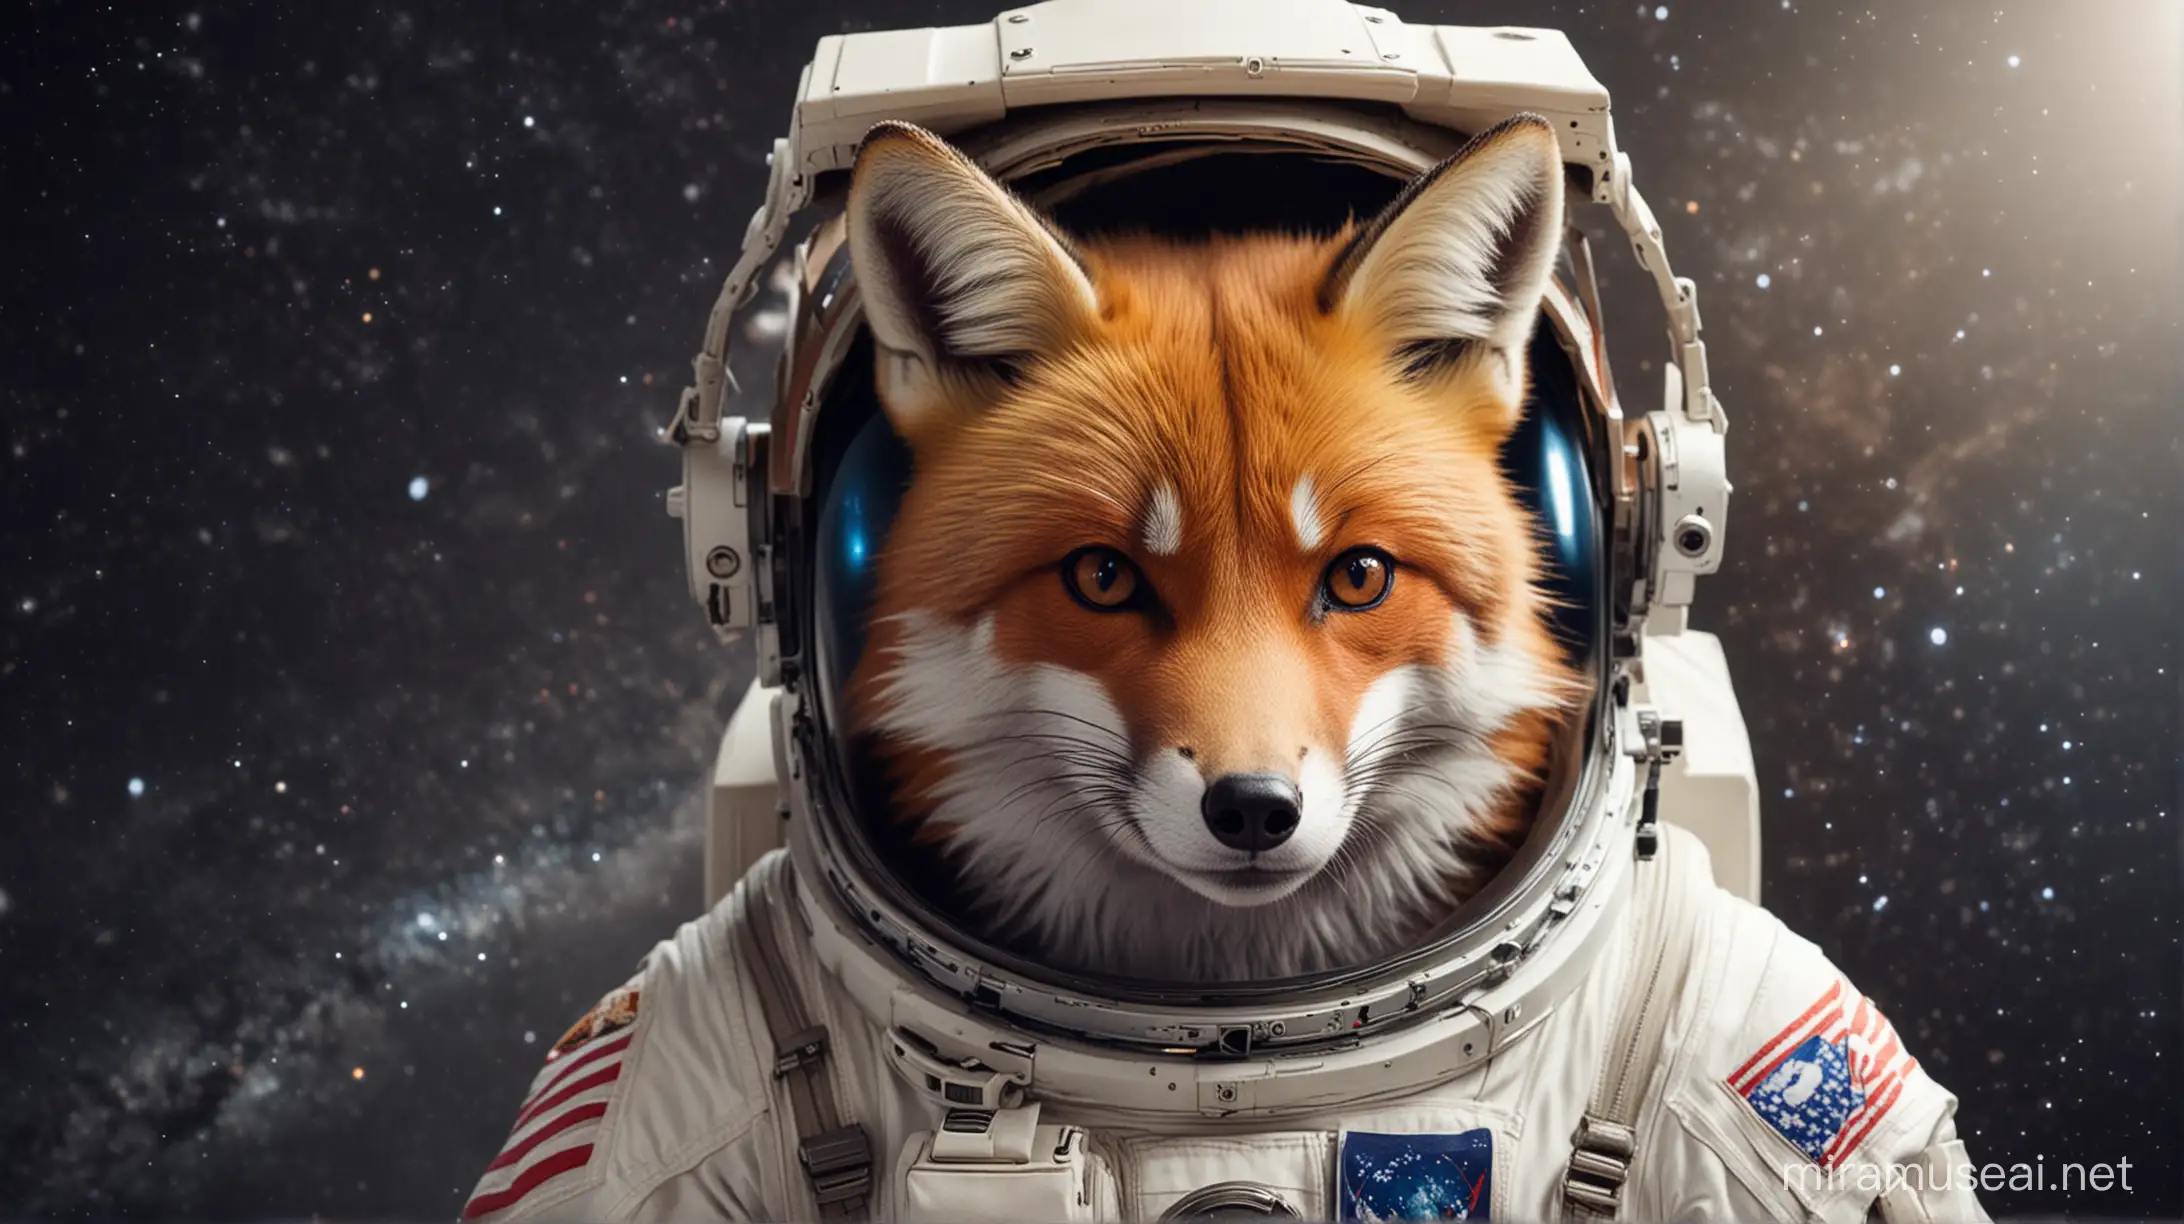 space fox wearing astronaut helmet